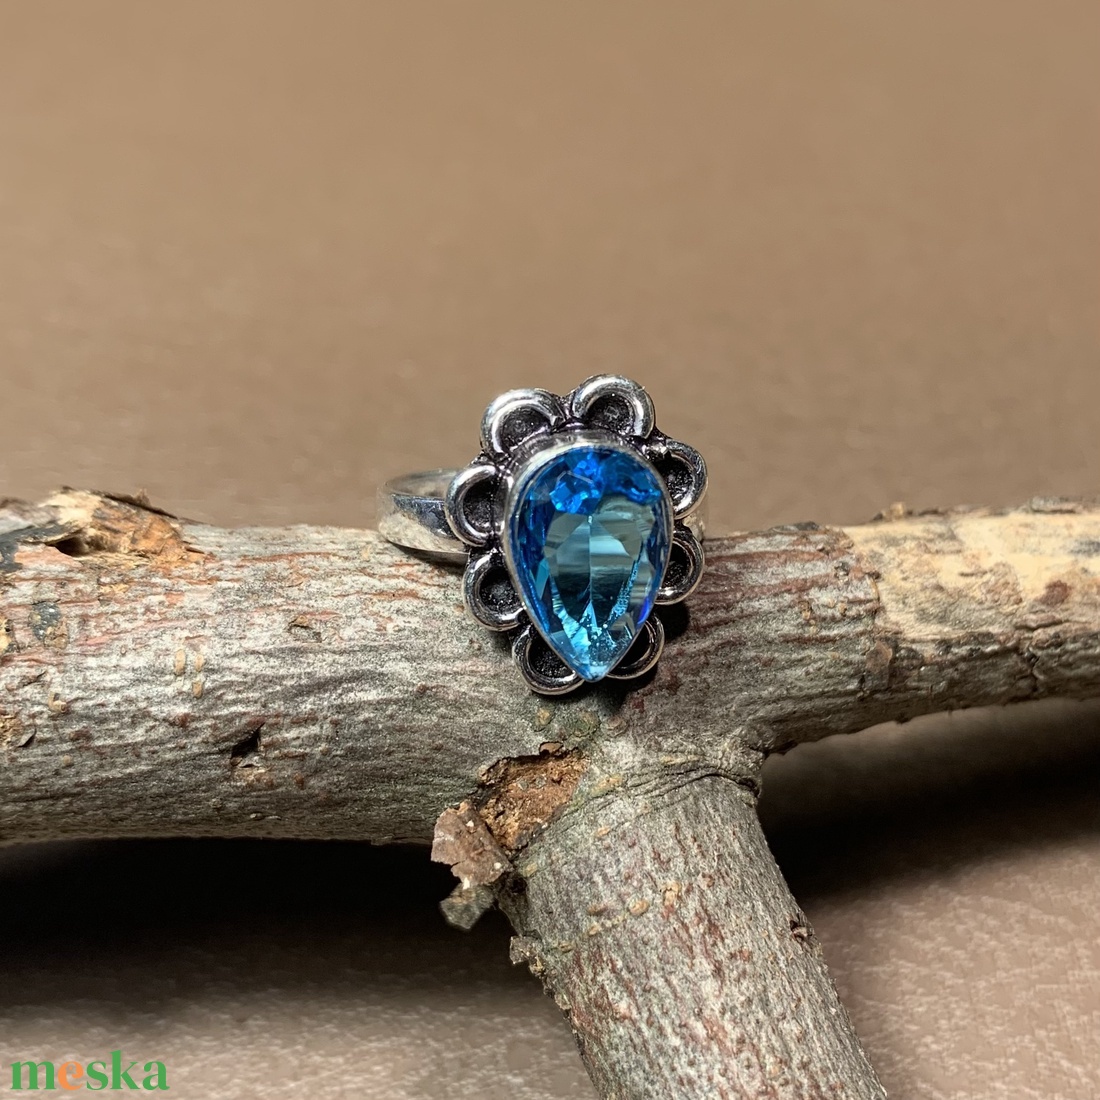 925 ezüst gyűrű kék topáz kővel 7-es  méret (17 mm átmérő) indiai ezüst gyűrű - ékszer - gyűrű - statement gyűrű - Meska.hu